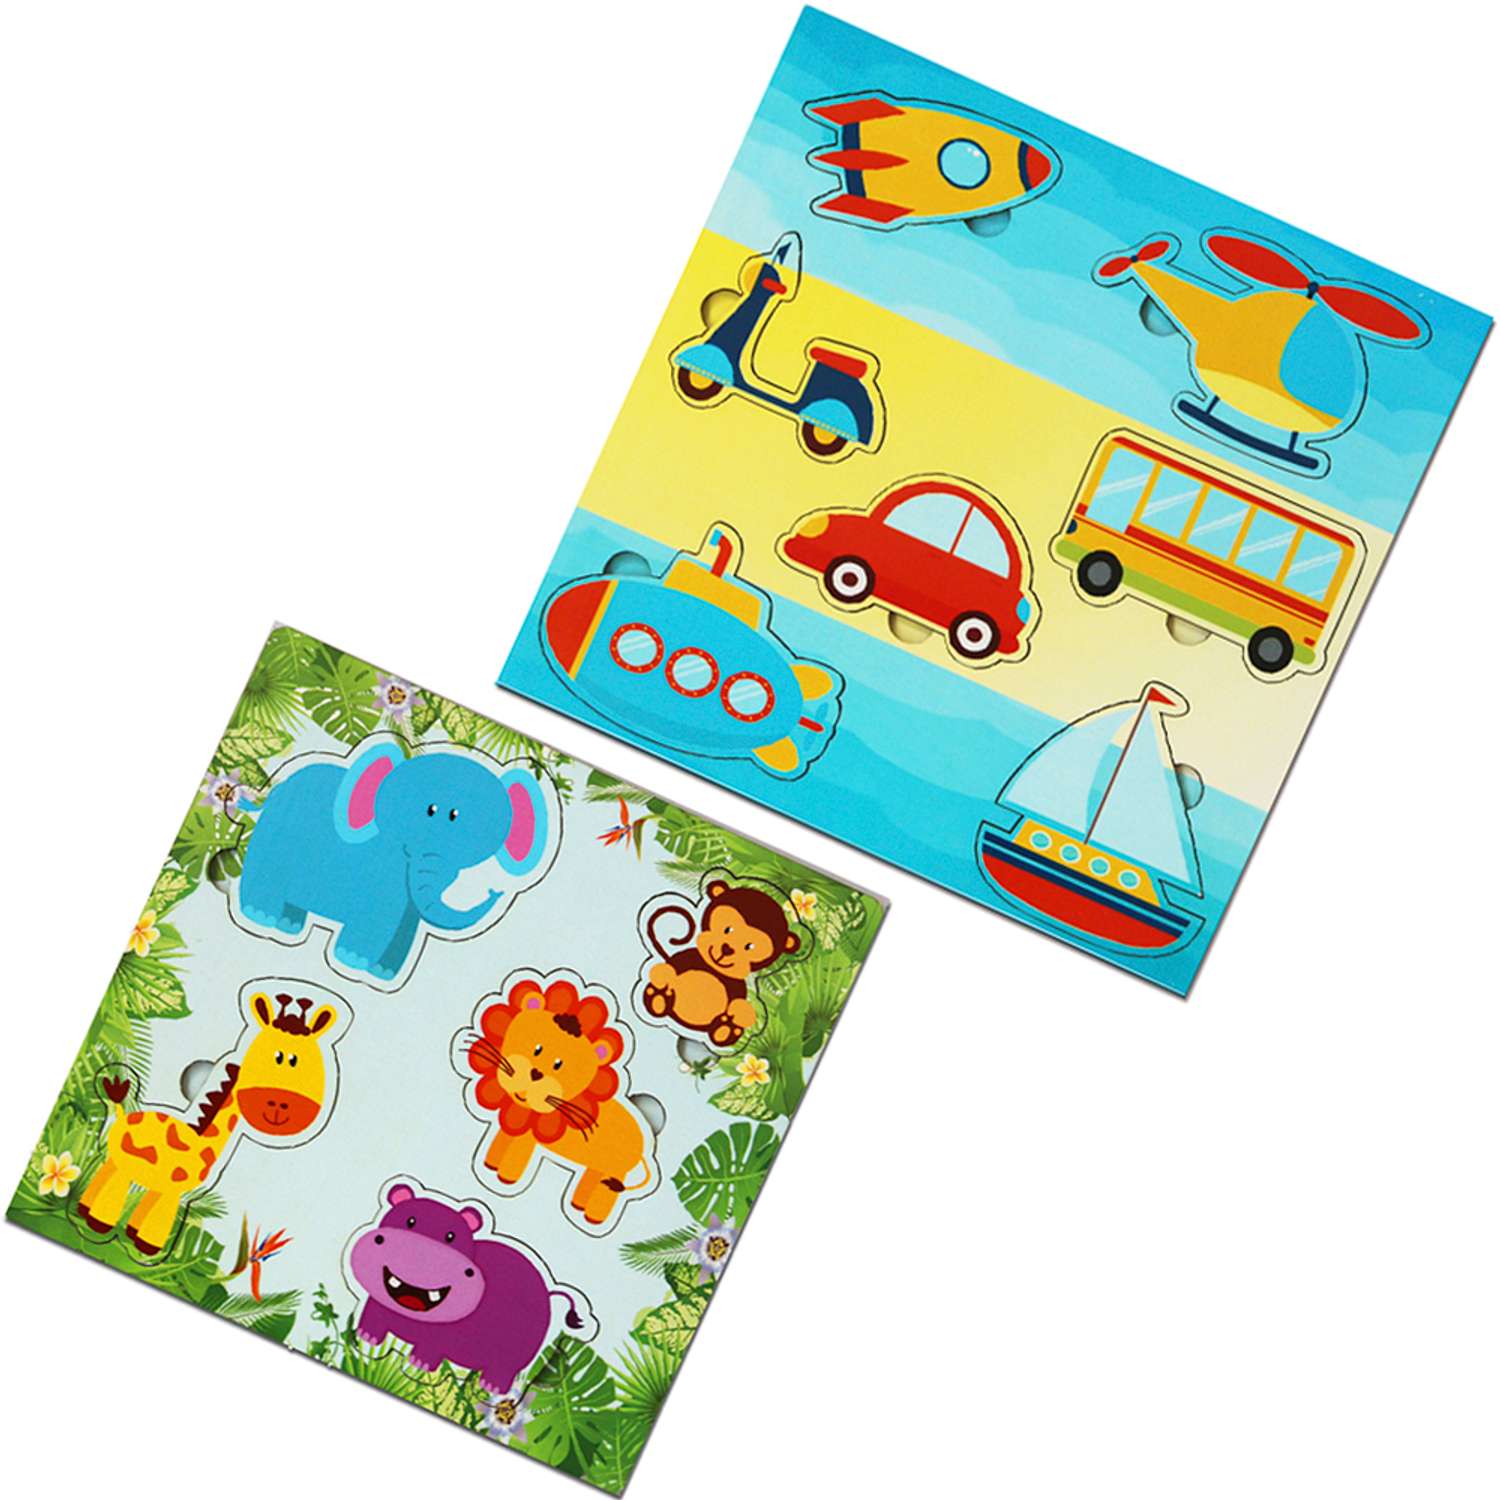 Игровой набор Parrot Carrot рамки вкладыши для малышей Джунгли и Машинки 2 шт - фото 1